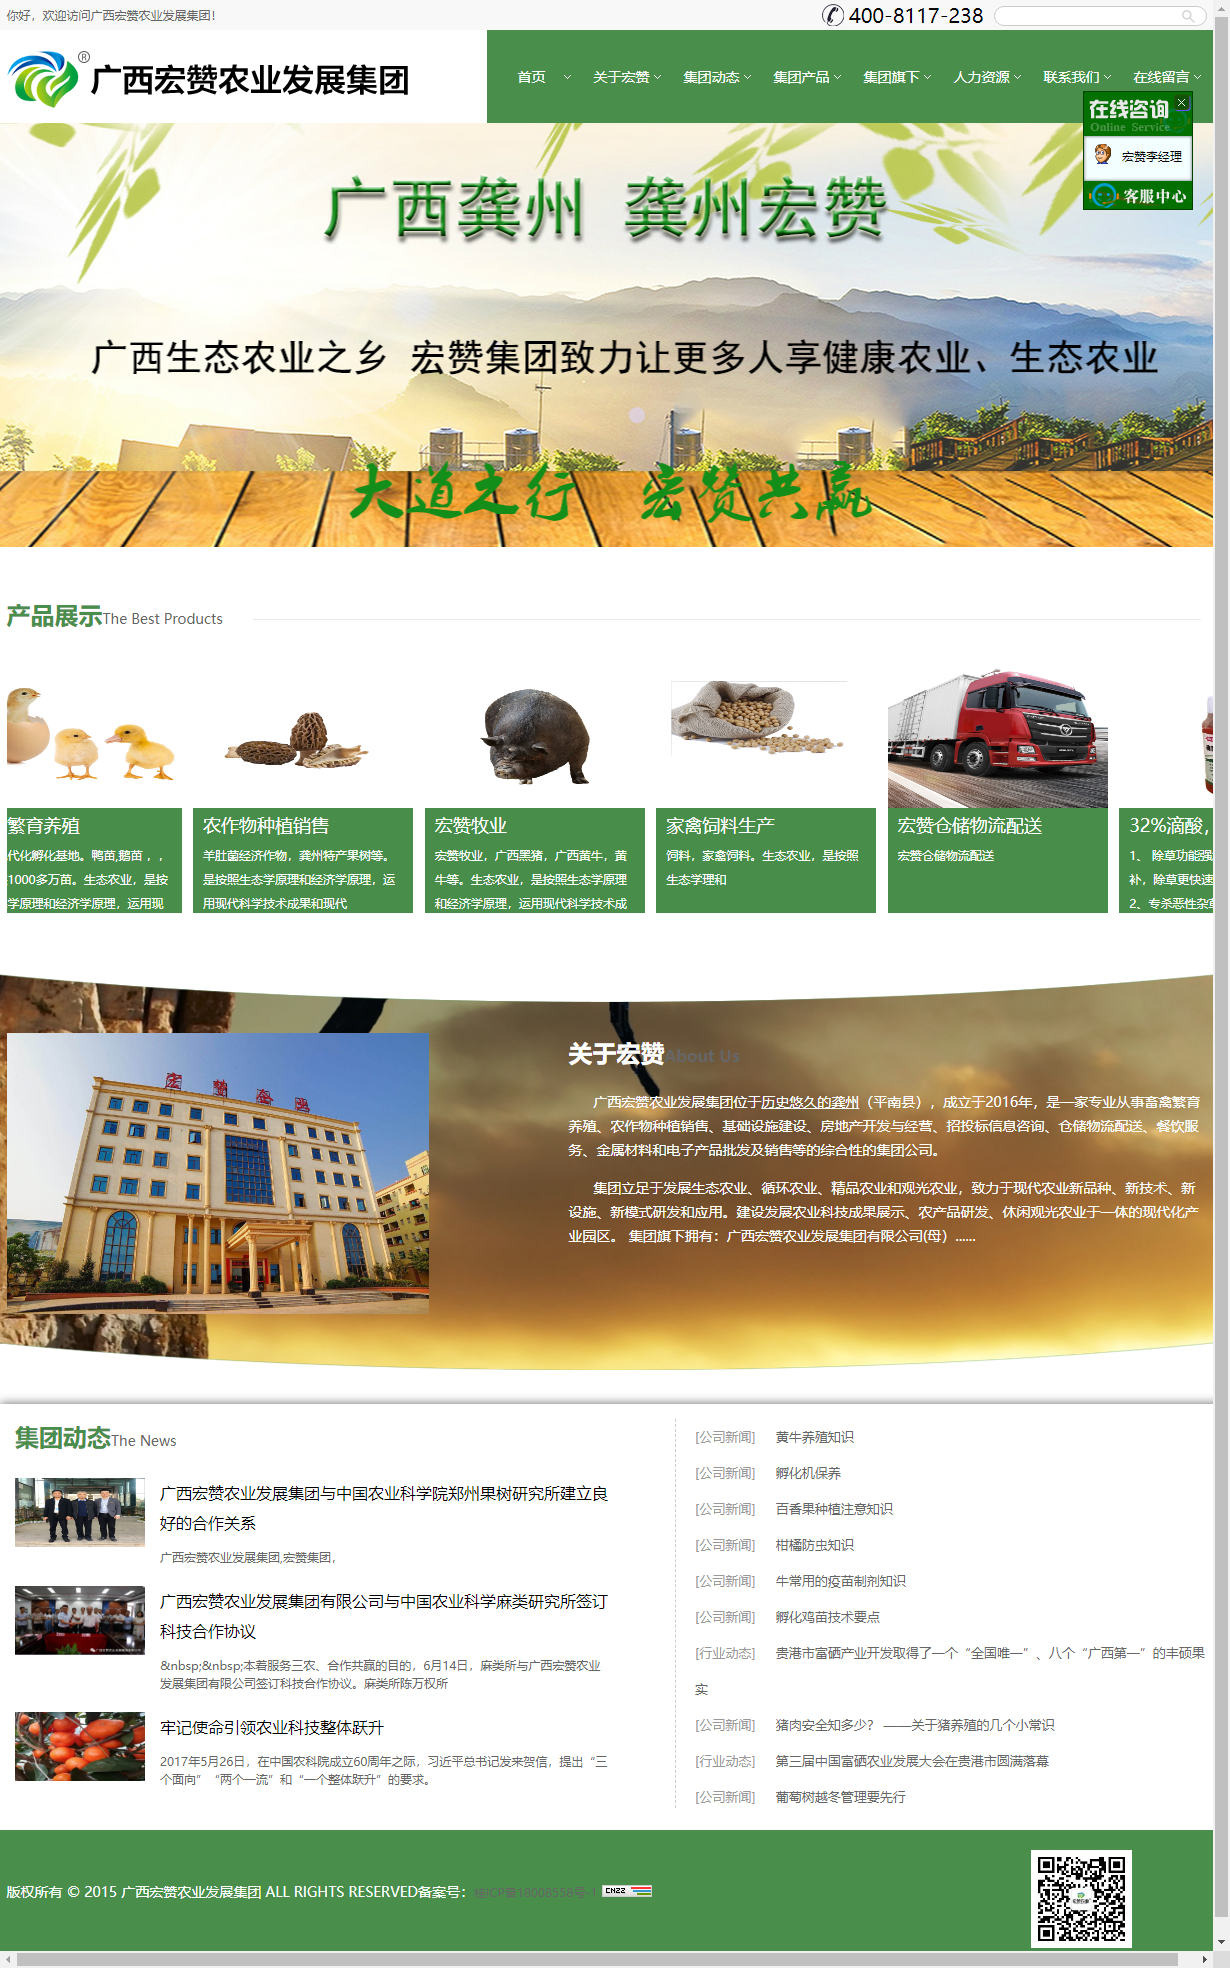 广西宏赞农业发展集团有限公司网站案例